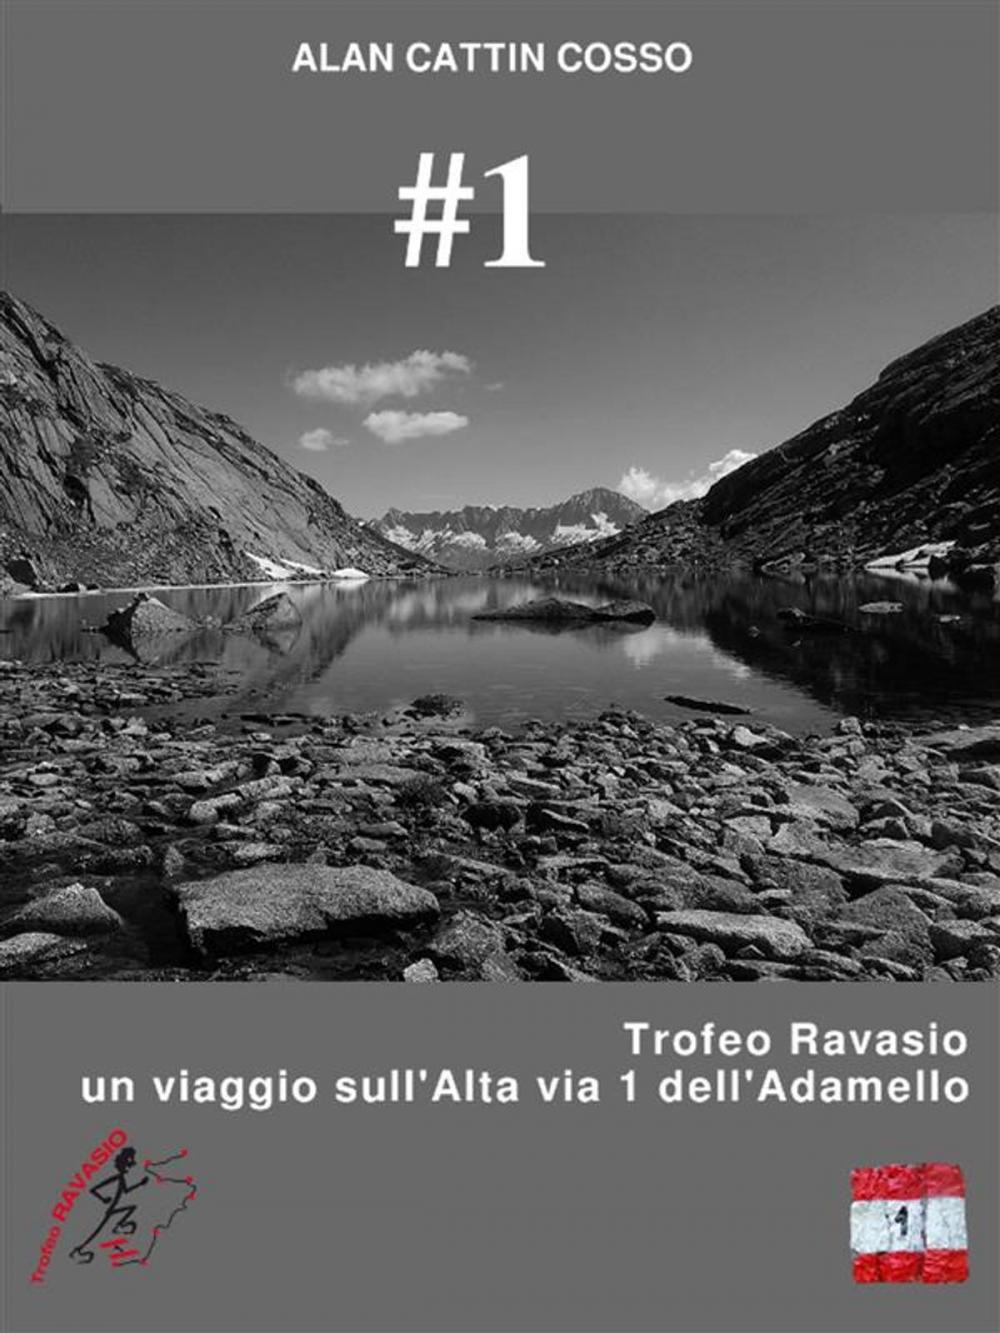 Big bigCover of #1 - Trofeo Ravasio, un viaggio sull'Alta via 1 dell'Adamello